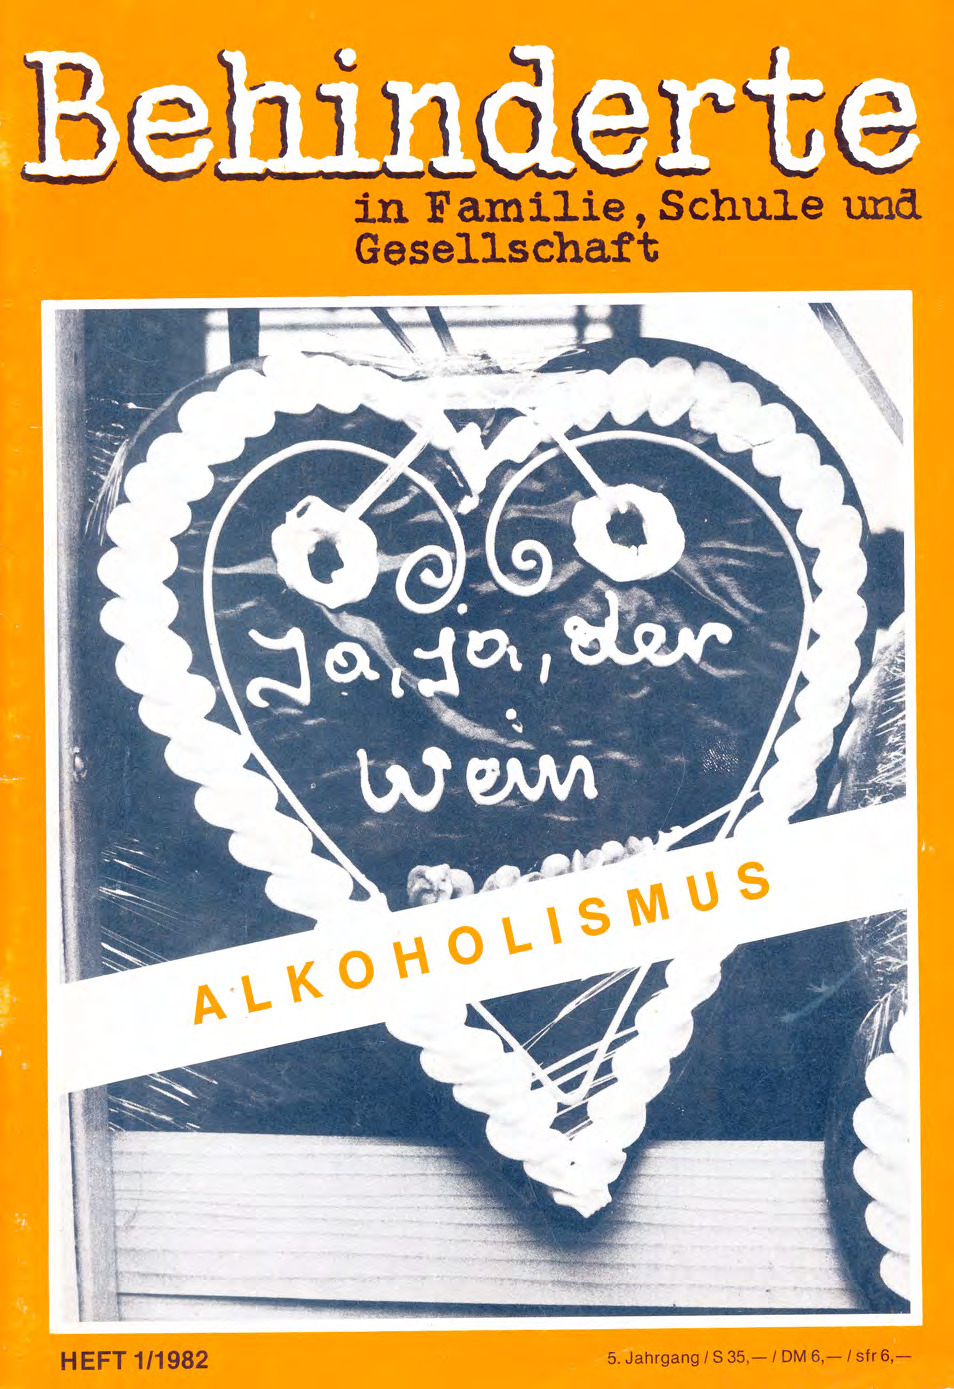 Titelbild der Zeitschrift BEHINDERTE MENSCHEN, Ausgabe 1/1982 "Alkoholismus"